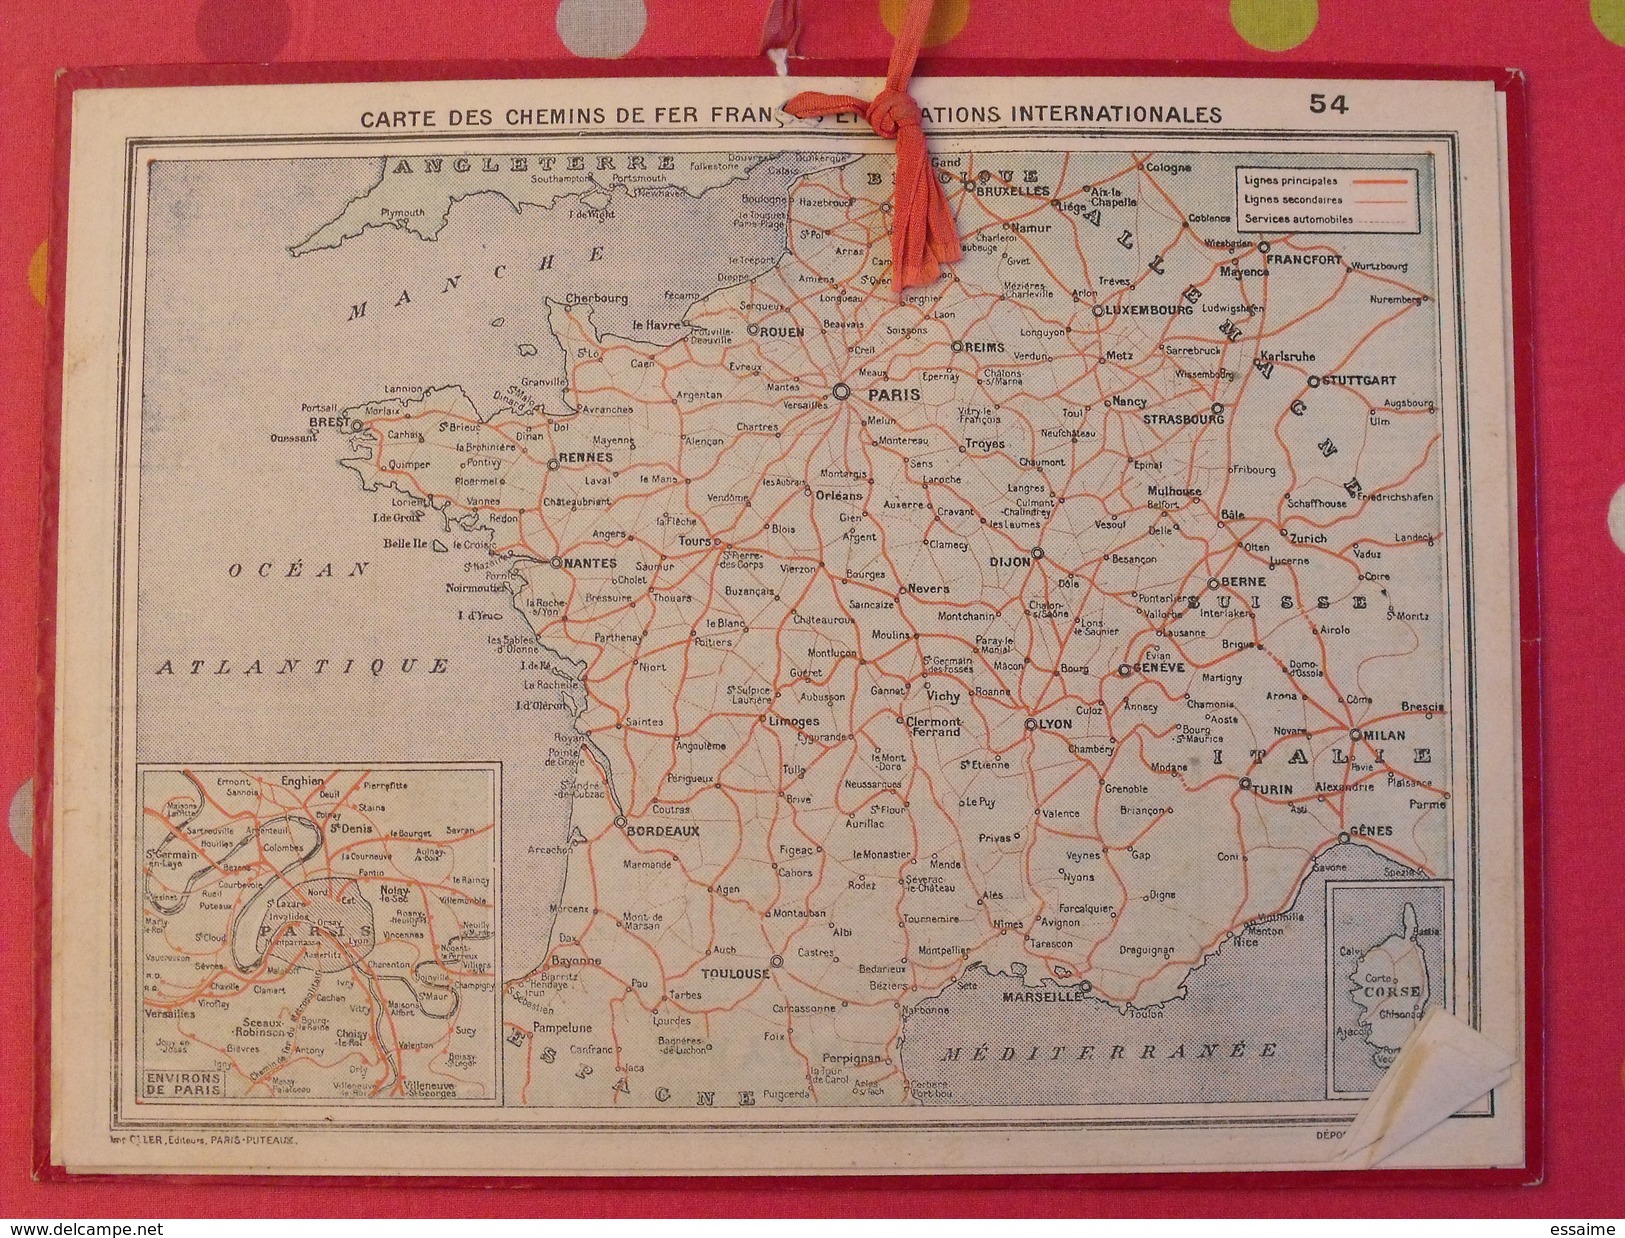 Almanach Des PTT. 1958. Calendrier Poste, Postes Télégraphes.. Montagne Paturage Vache - Grossformat : 1941-60